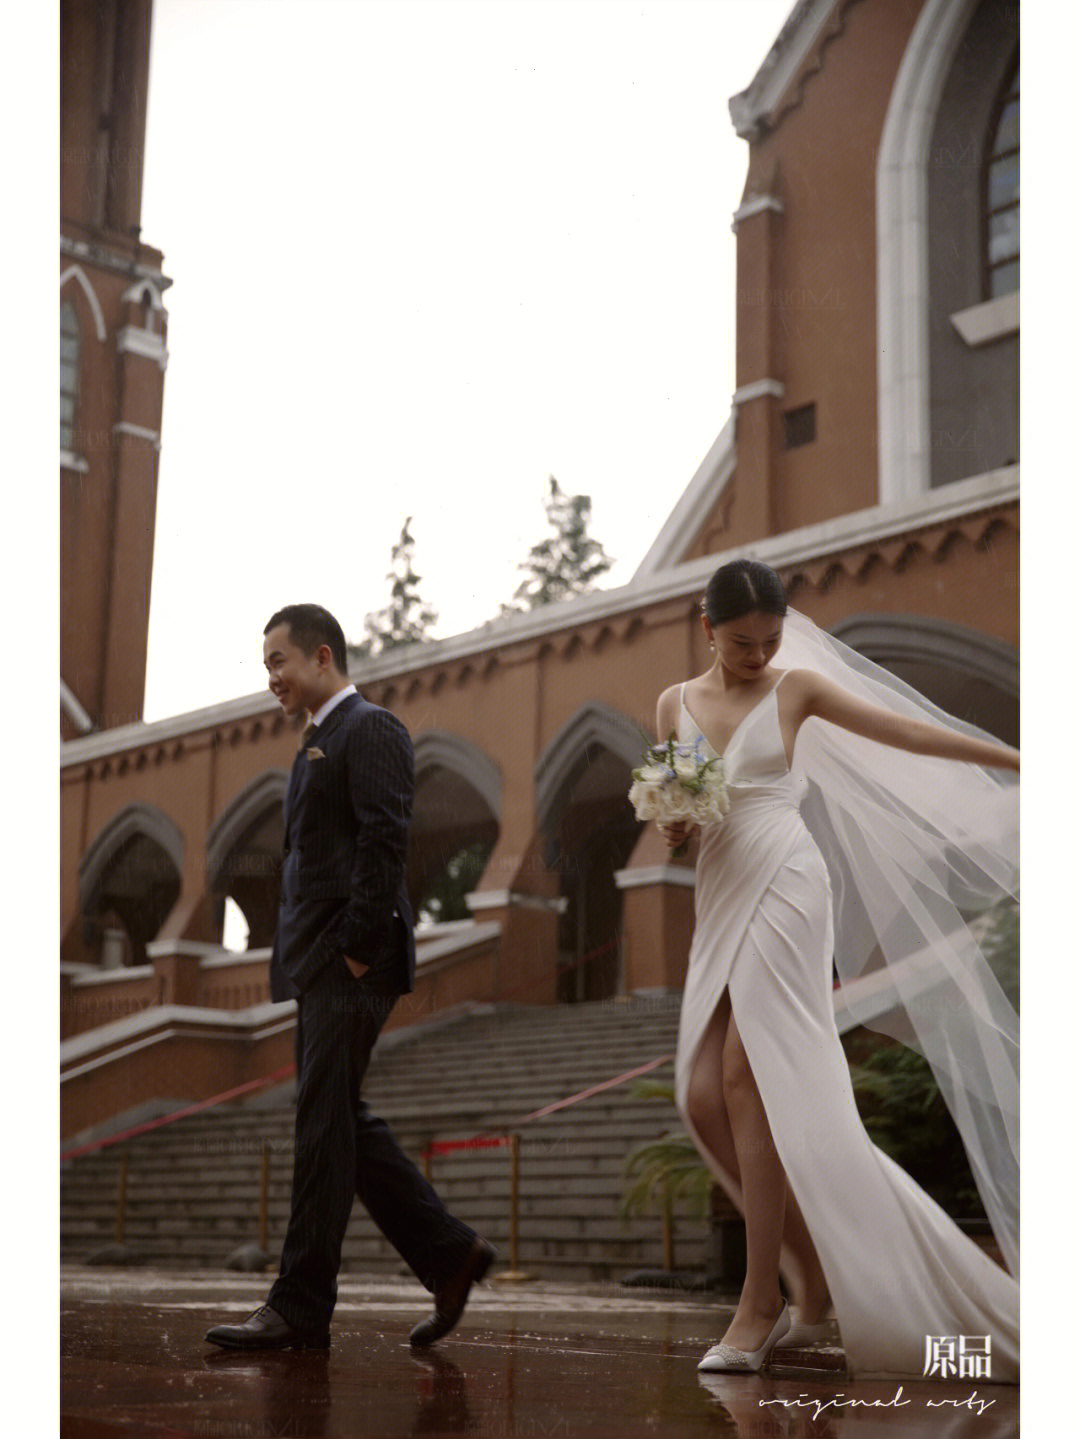 苏州独墅湖教堂婚礼图片